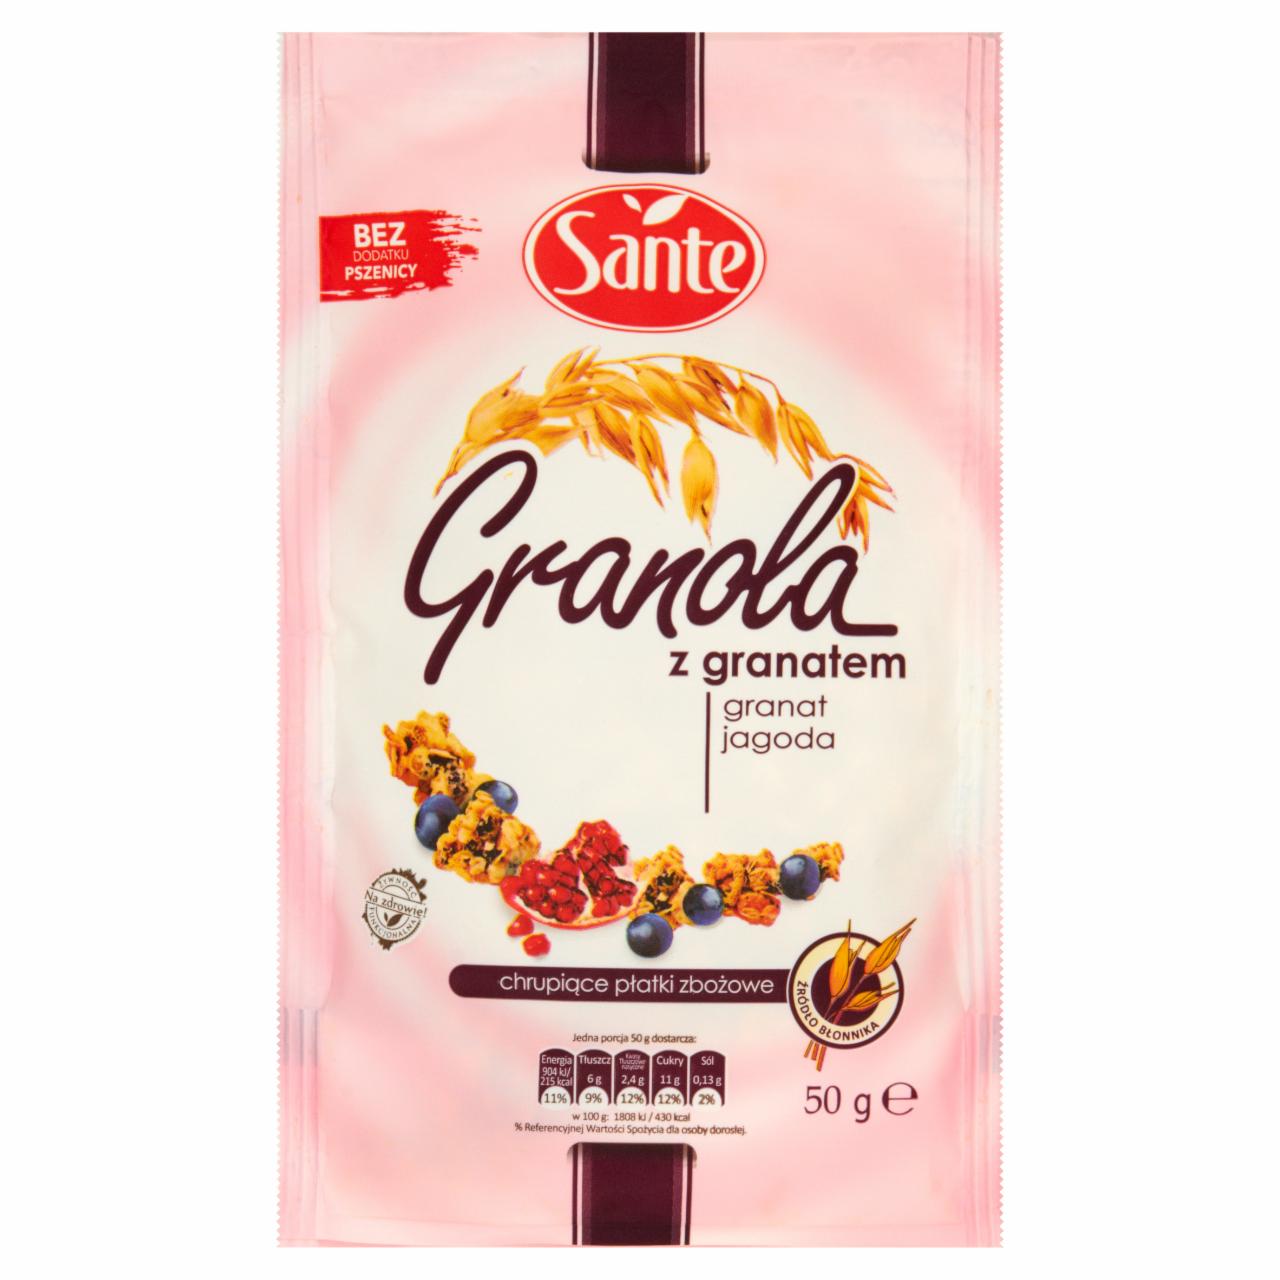 Zdjęcia - Sante Granola z granatem i jagodą 50 g